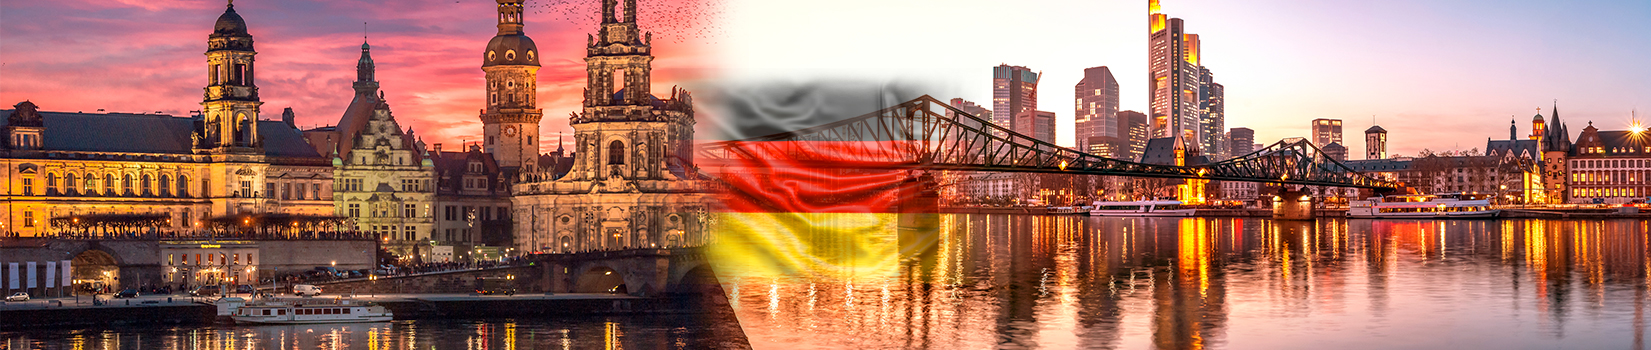 Almanya vizesi 2021